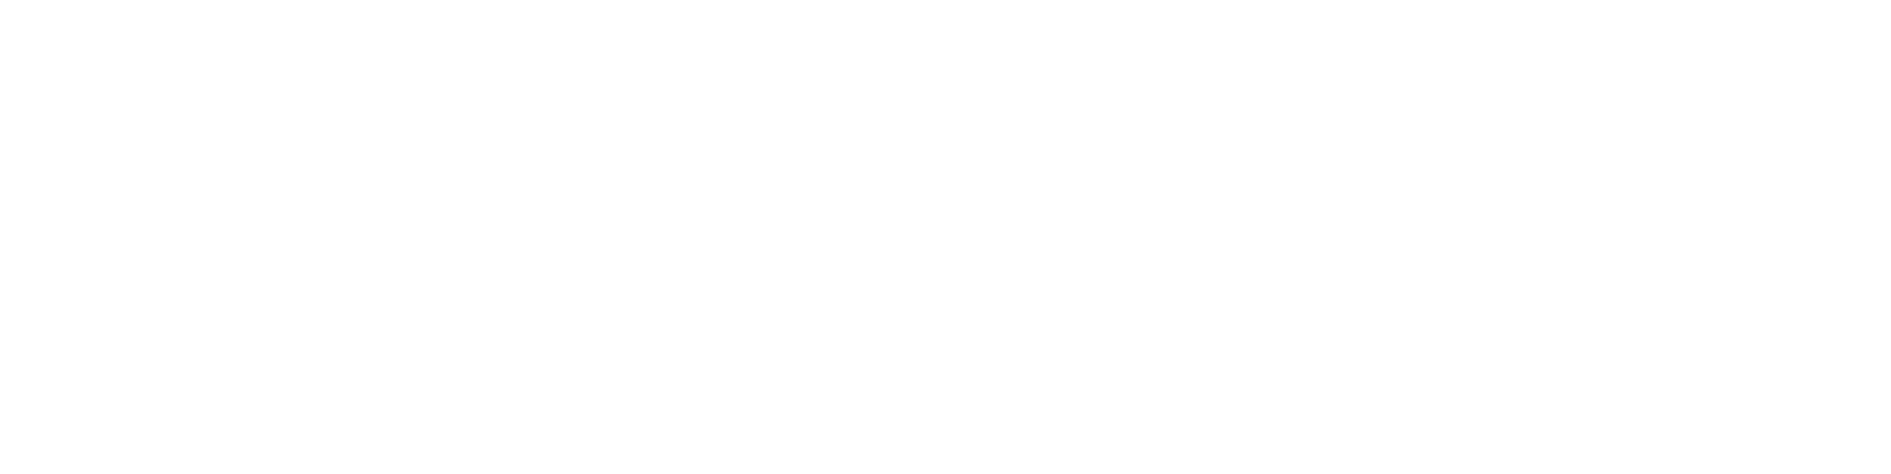 The Barker Team Realtors / Keller Williams Consultants Realty